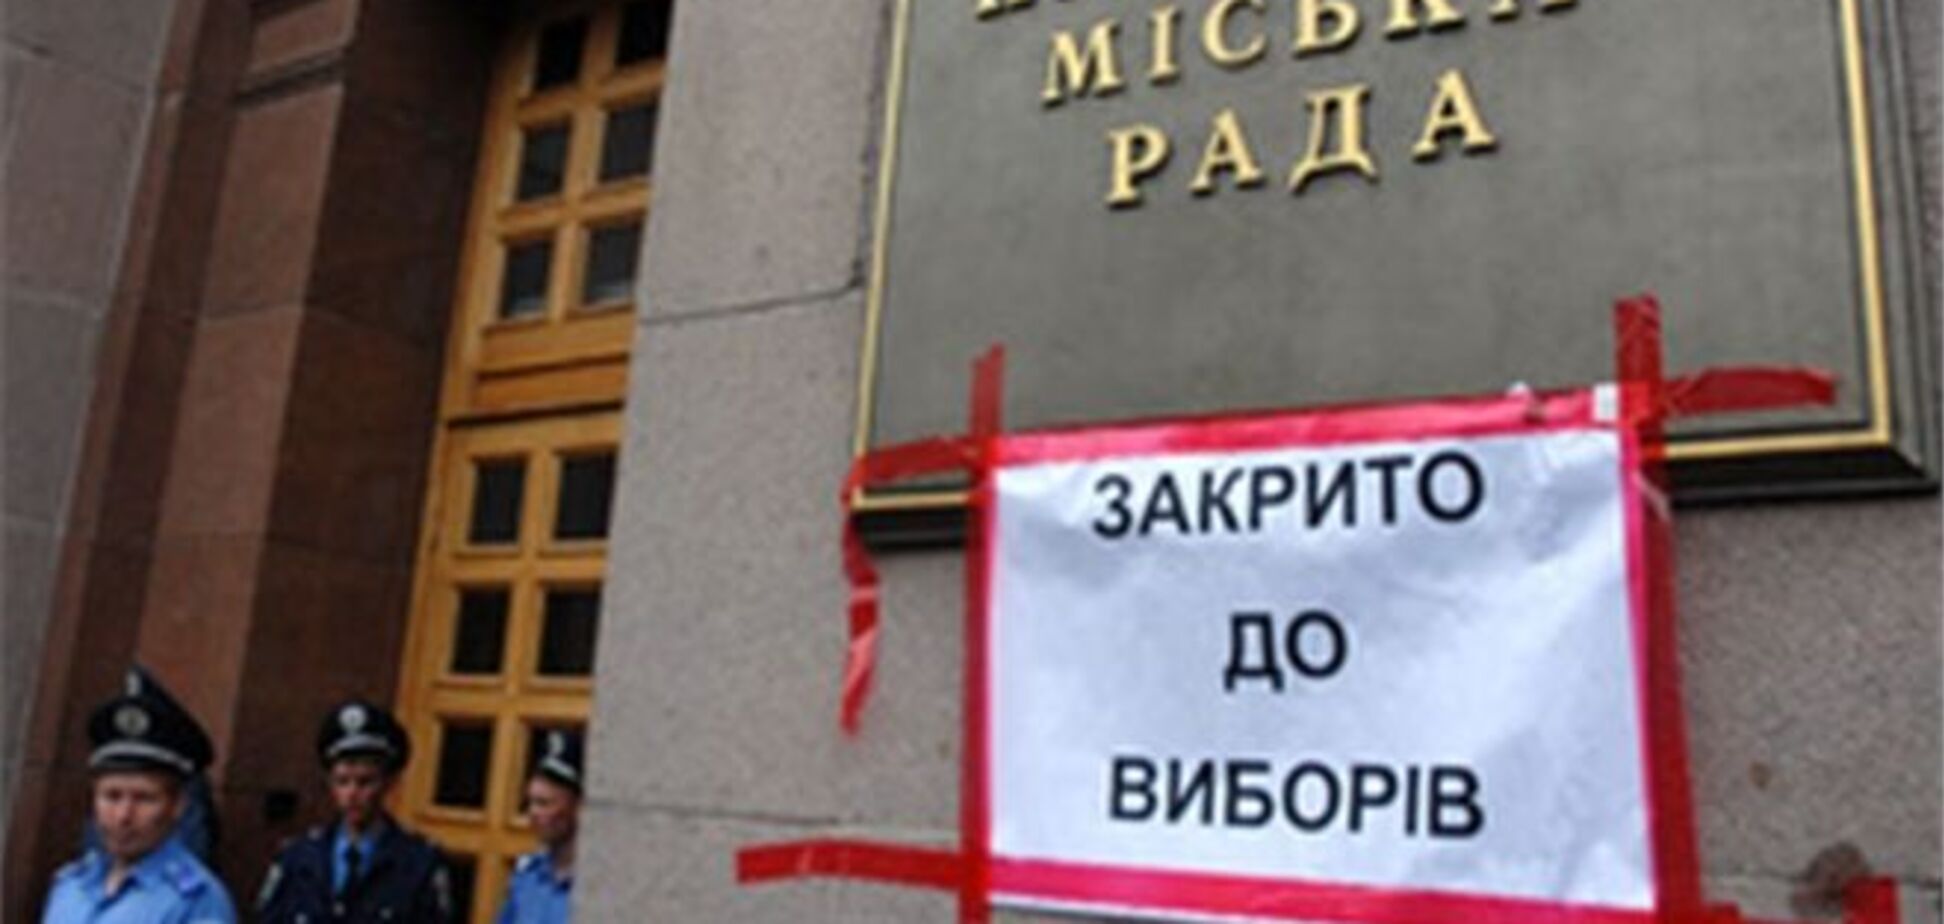 УДАР предлагает назначить выборы мэра Киева на 15 декабря